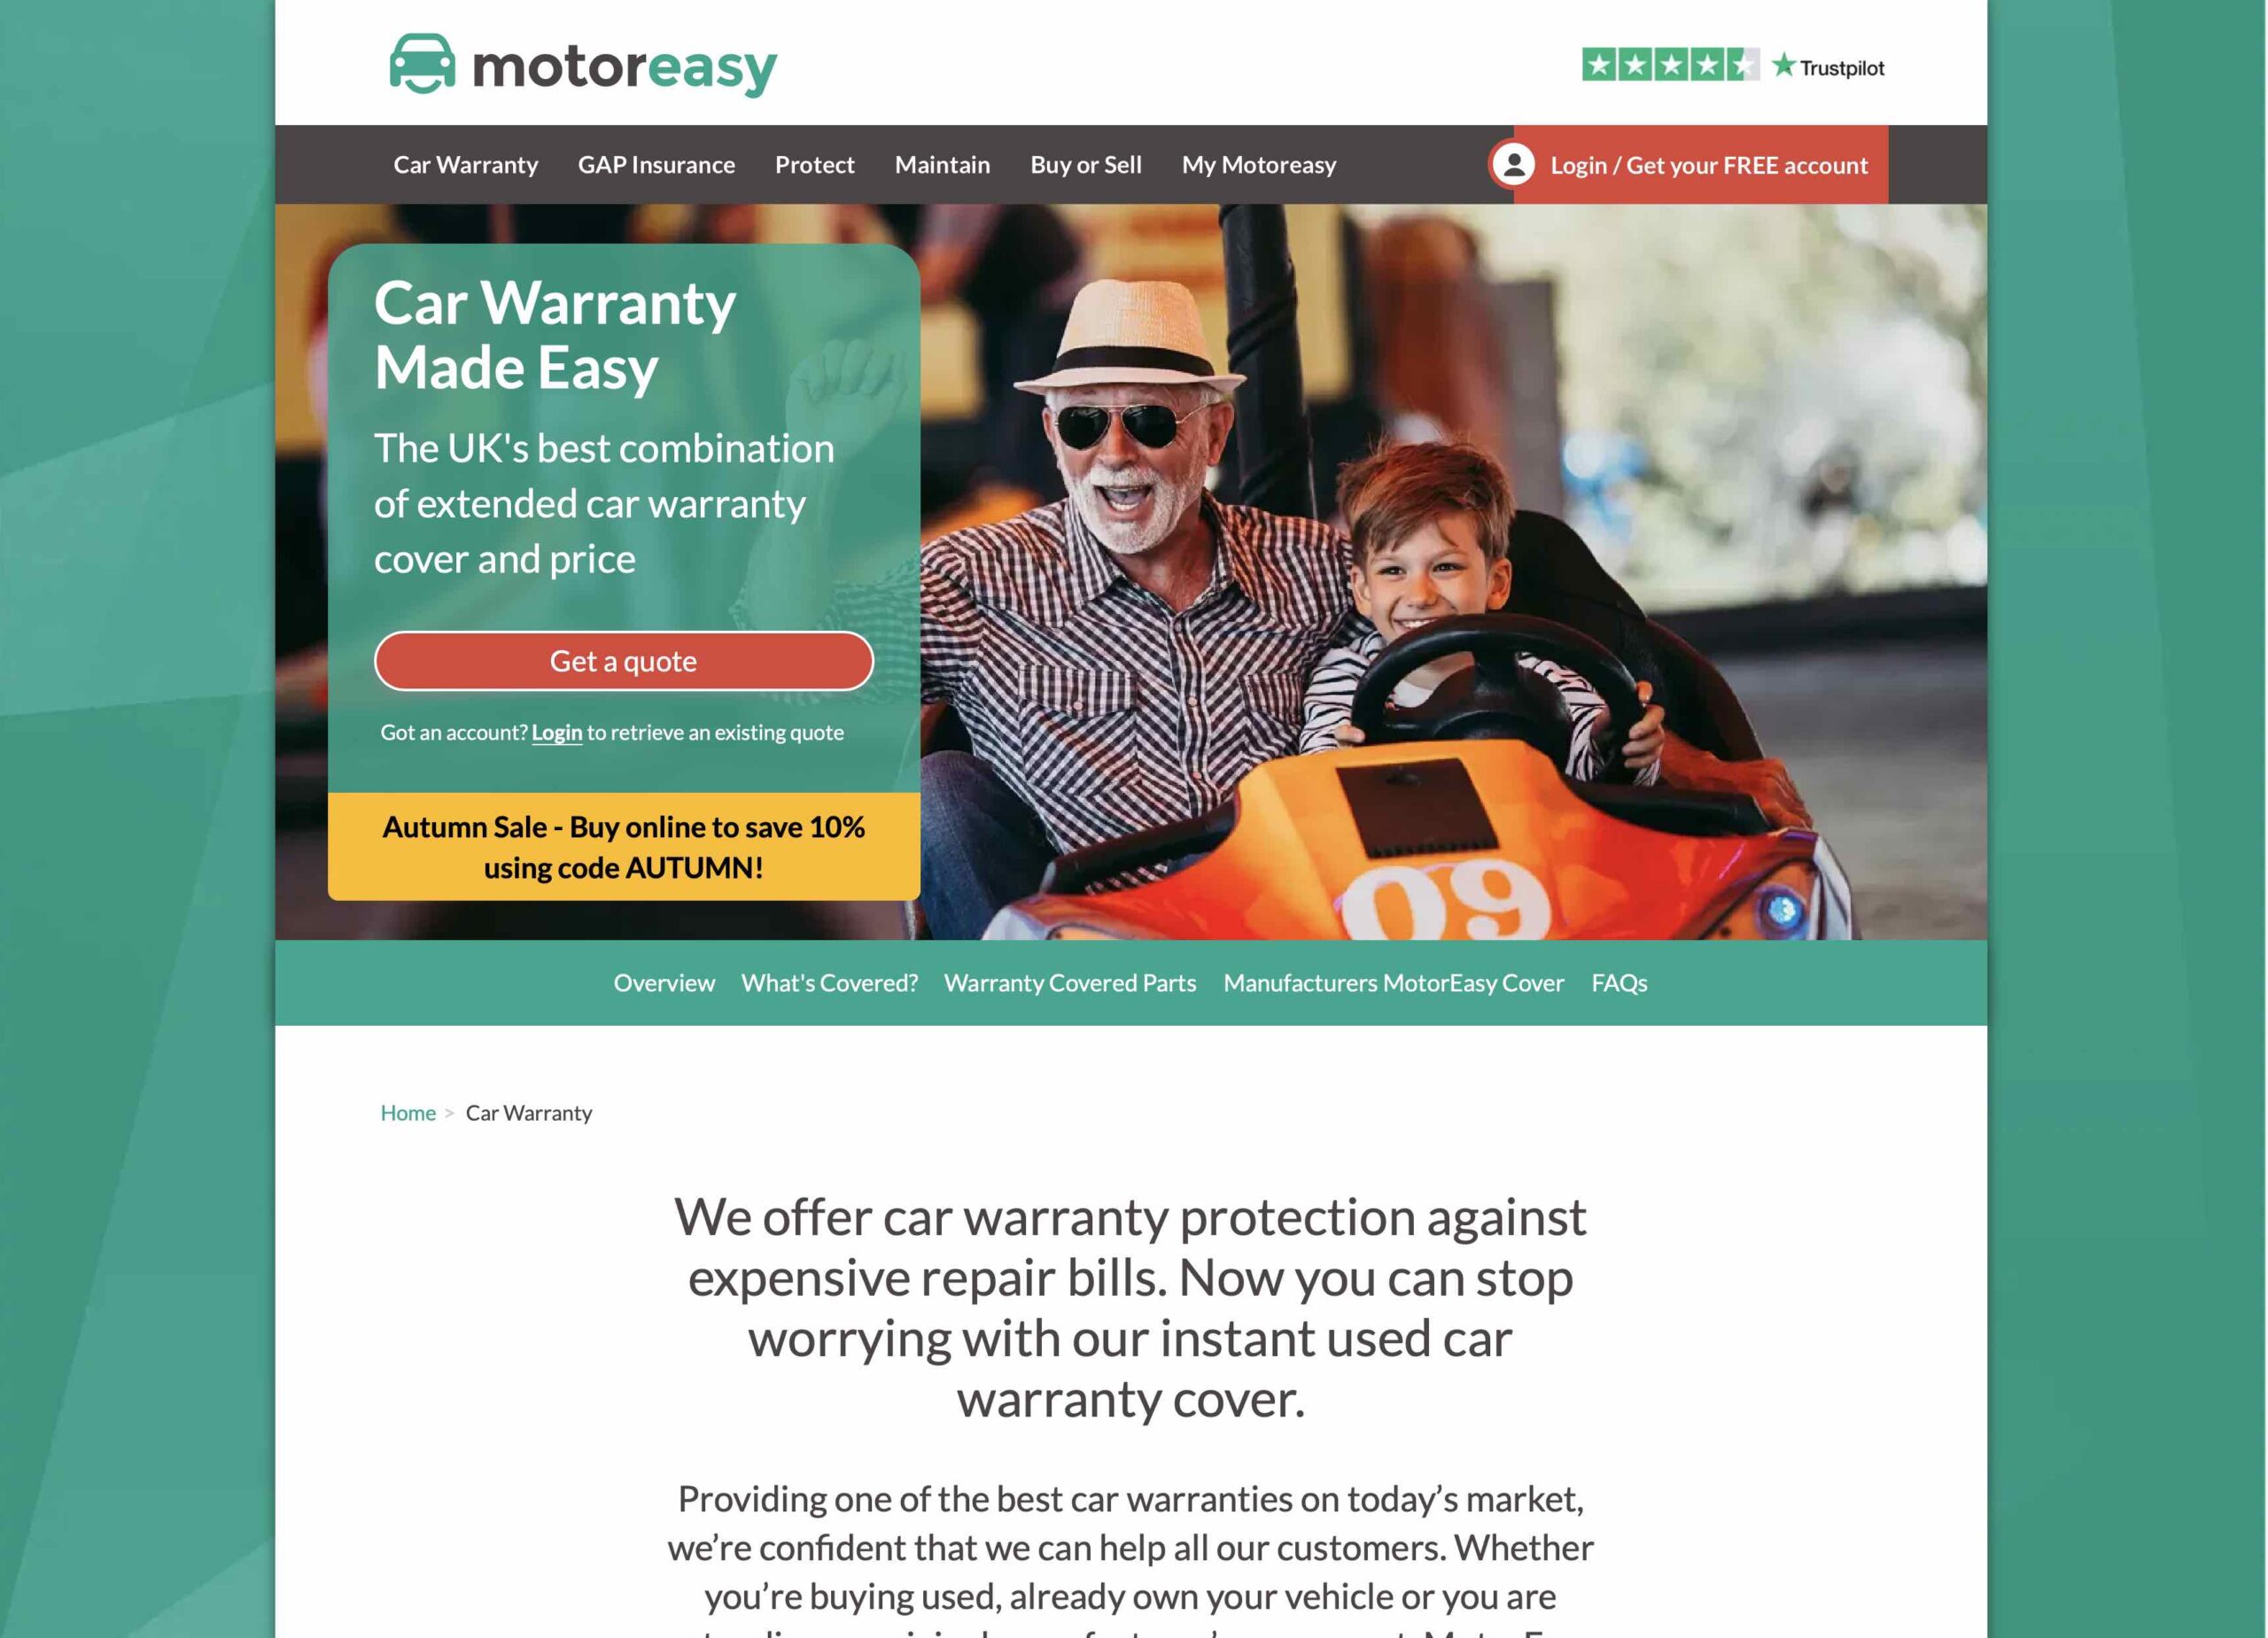 moreasy-car-warranty